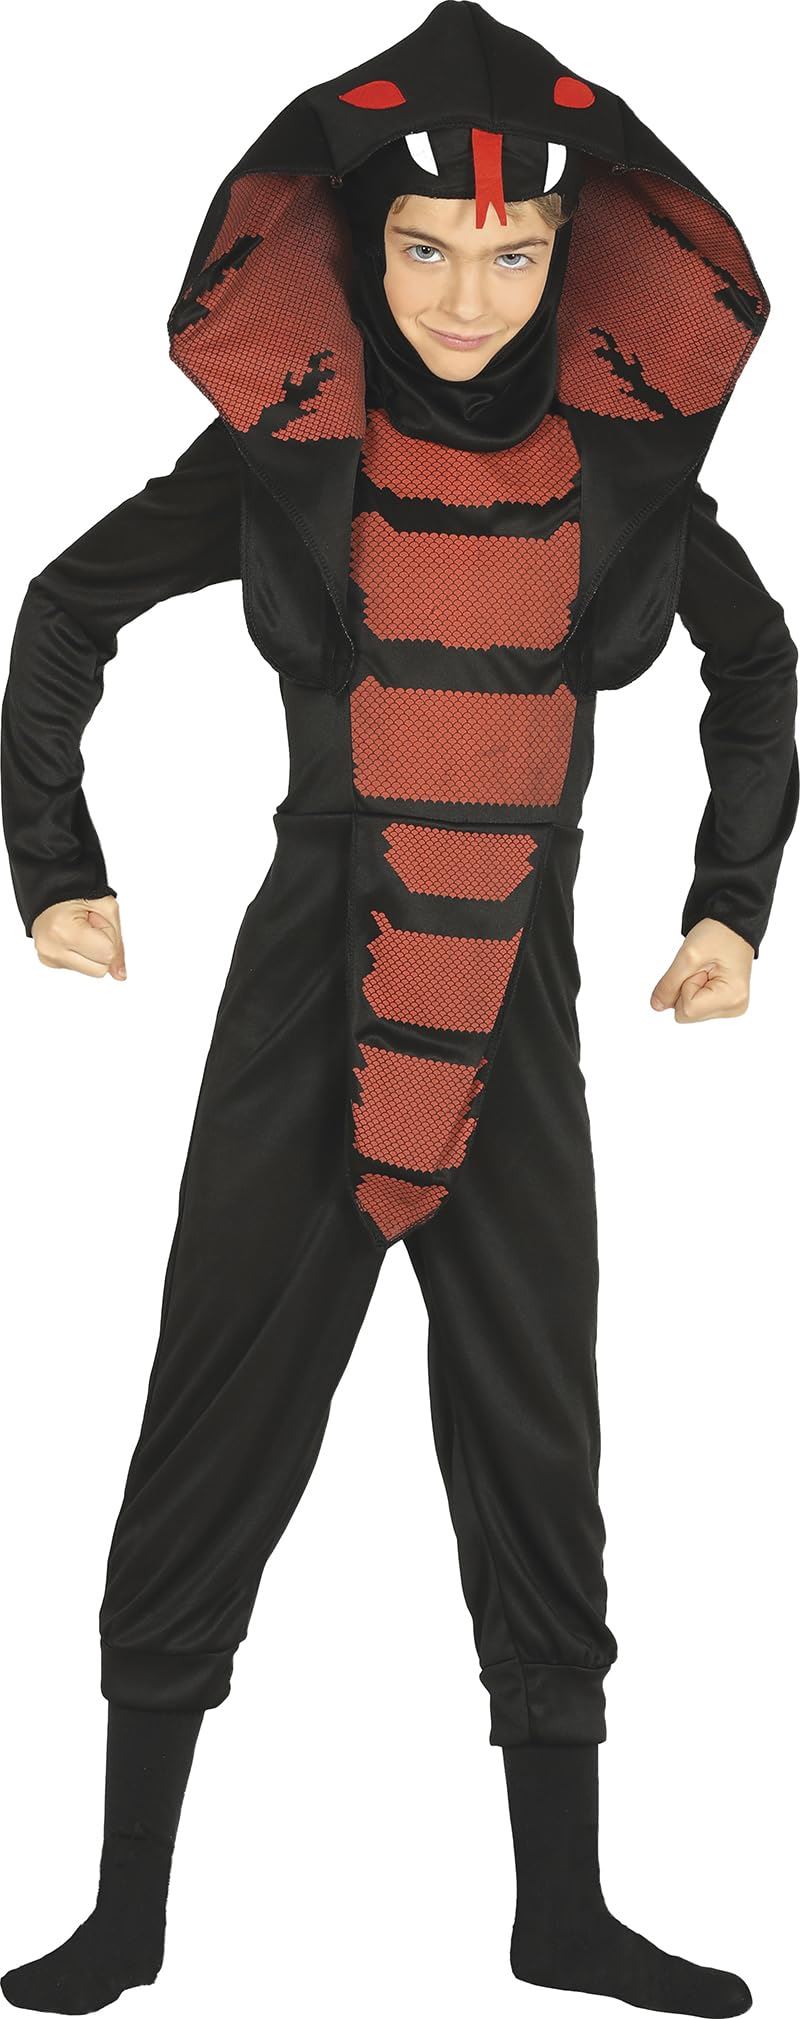 Child Cobra Ninja Costume - 5-6 Years